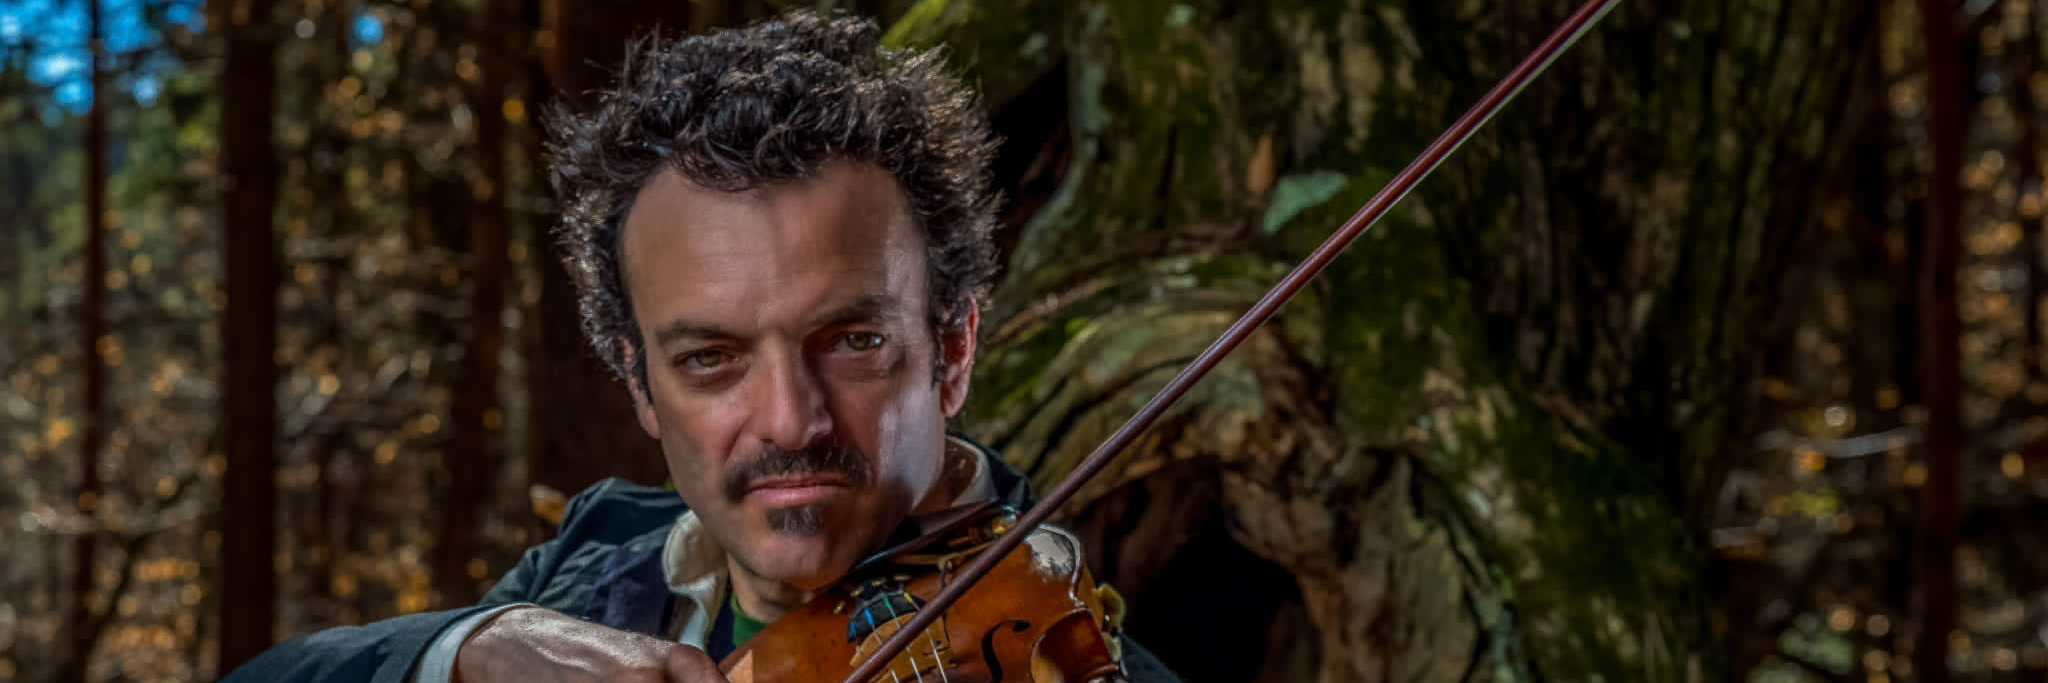 Sergio Caputo, musicien Folk en représentation à Alpes Maritimes - photo de couverture